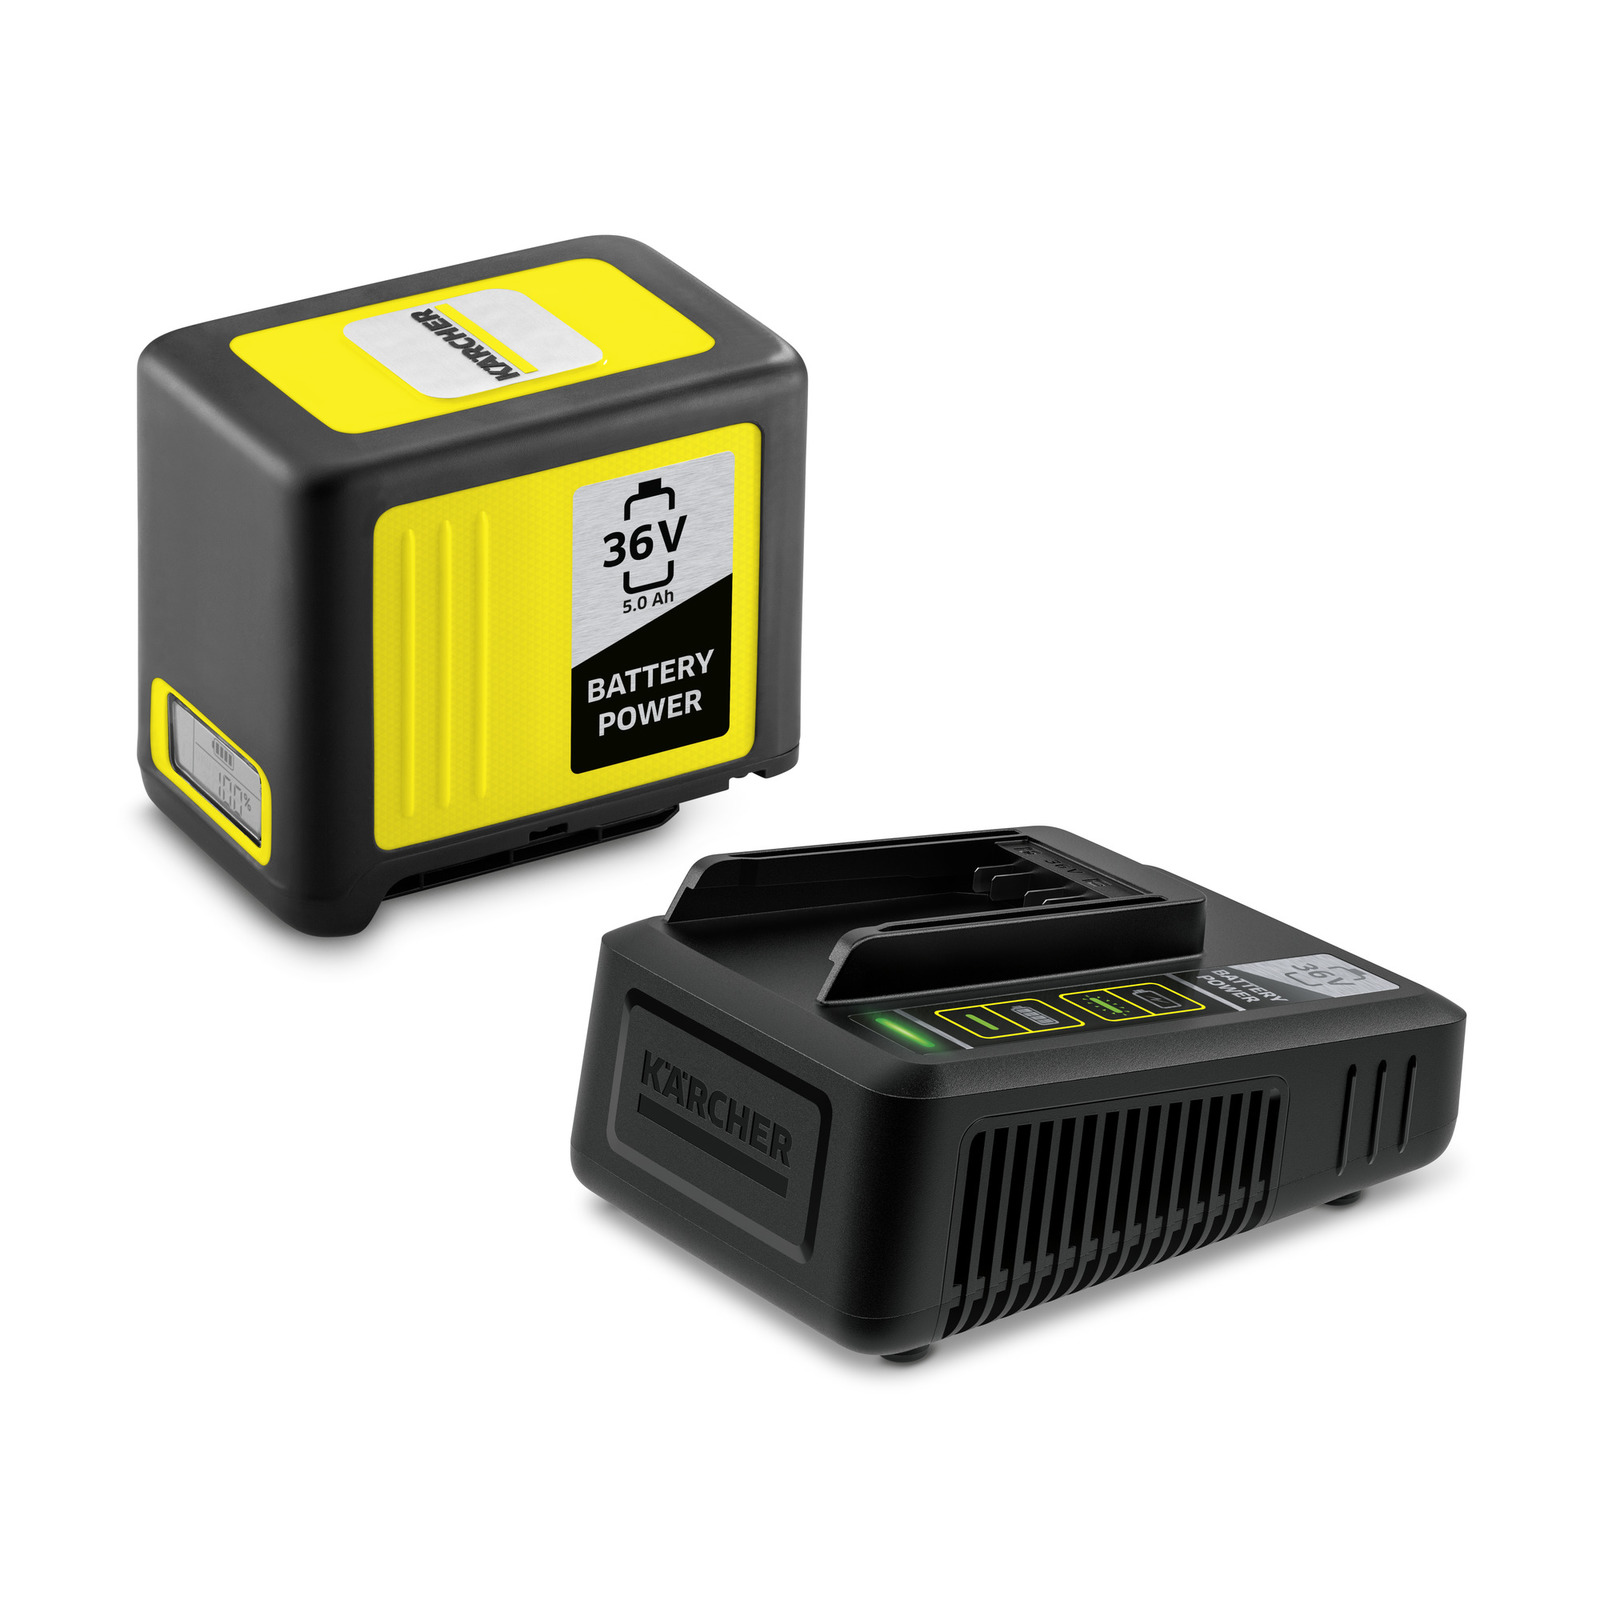 Poza Starter kit Battery Power 36/50